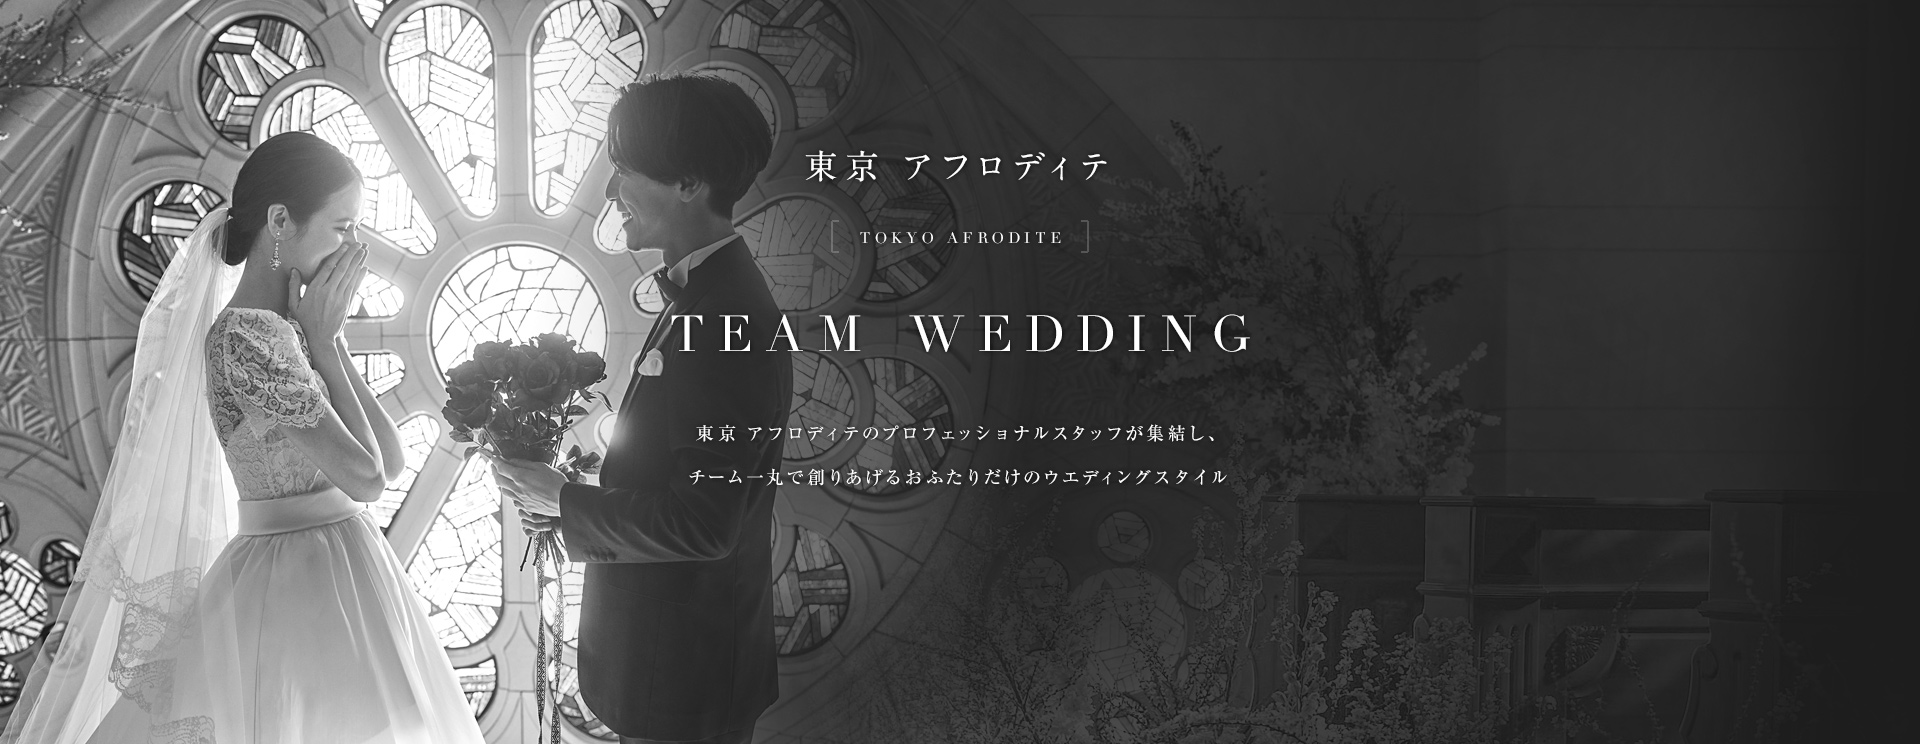 東京アフロディテ TOKYO AFRODITE TEAM WEDDING 東京 アフロディテのプロフェッショナルスタッフが集結し、チーム一丸で創りあげるおふたりだけのウエディングスタイル